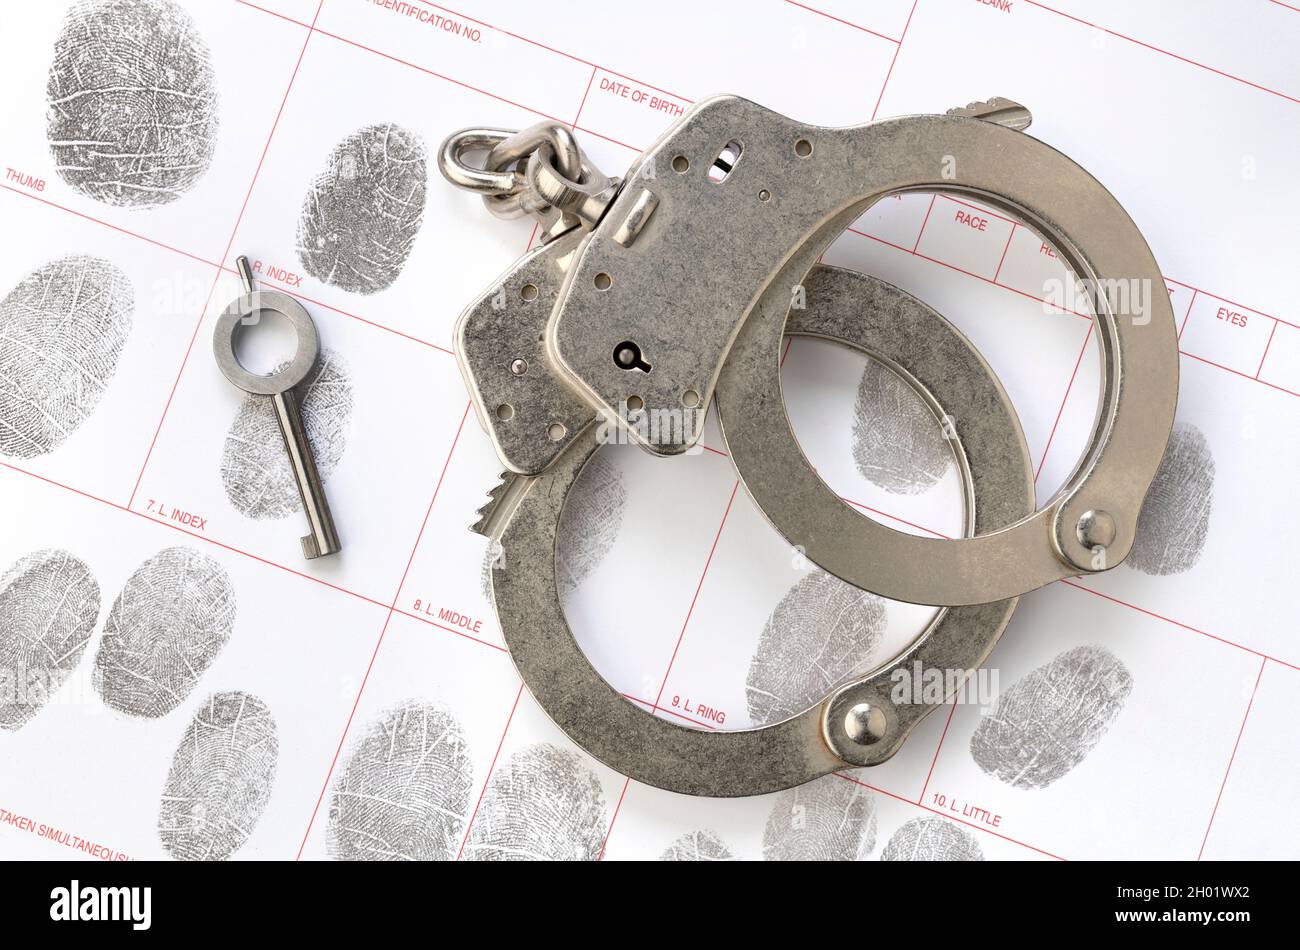 Ein Paar Handschellen und der Schlüssel liegen auf einer Fingerabdruck-ID-Buchungskarte, was auf Kriminalität, Rechenschaftspflicht, Bestrafung und Strafverfolgung schließen lässt. Stockfoto